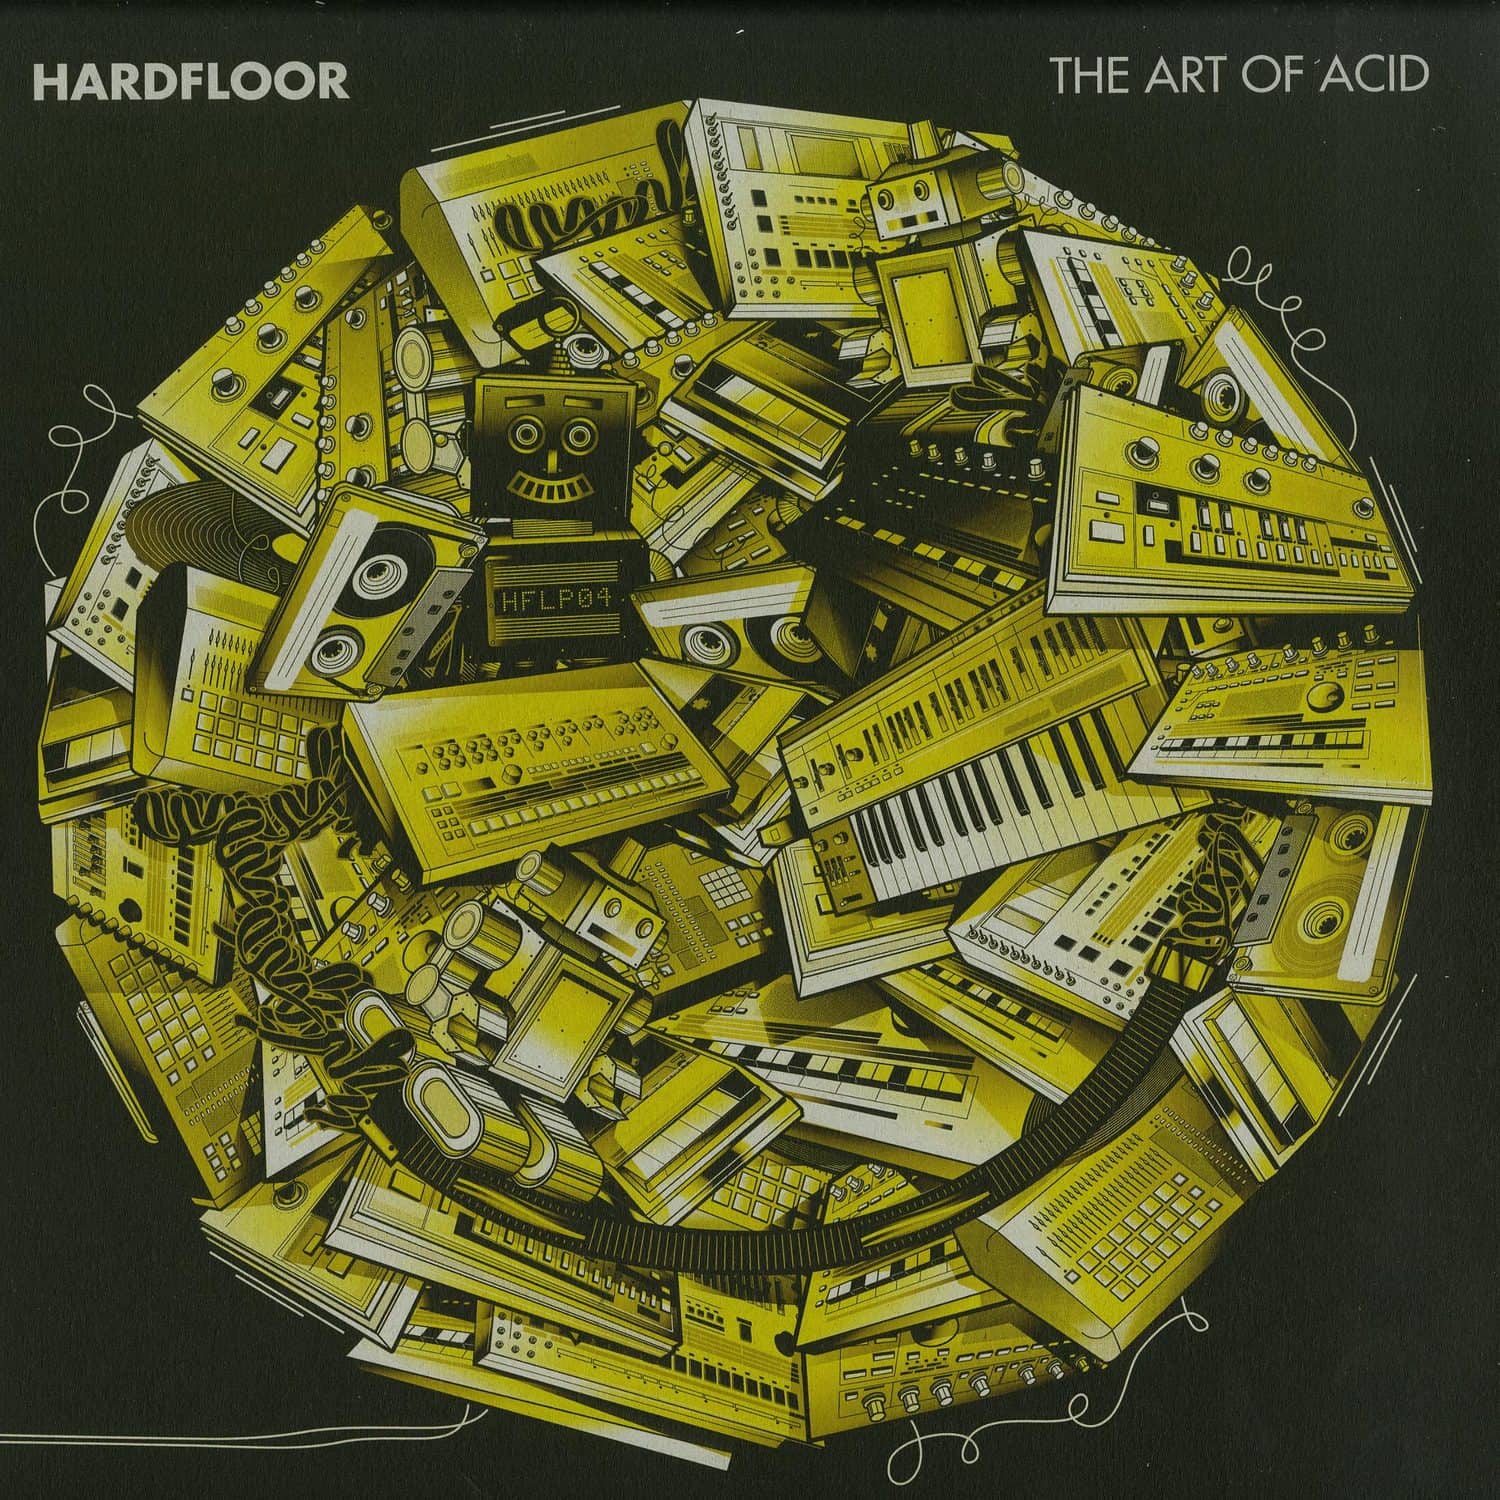 Hardfloor - THE ART OF ACID 